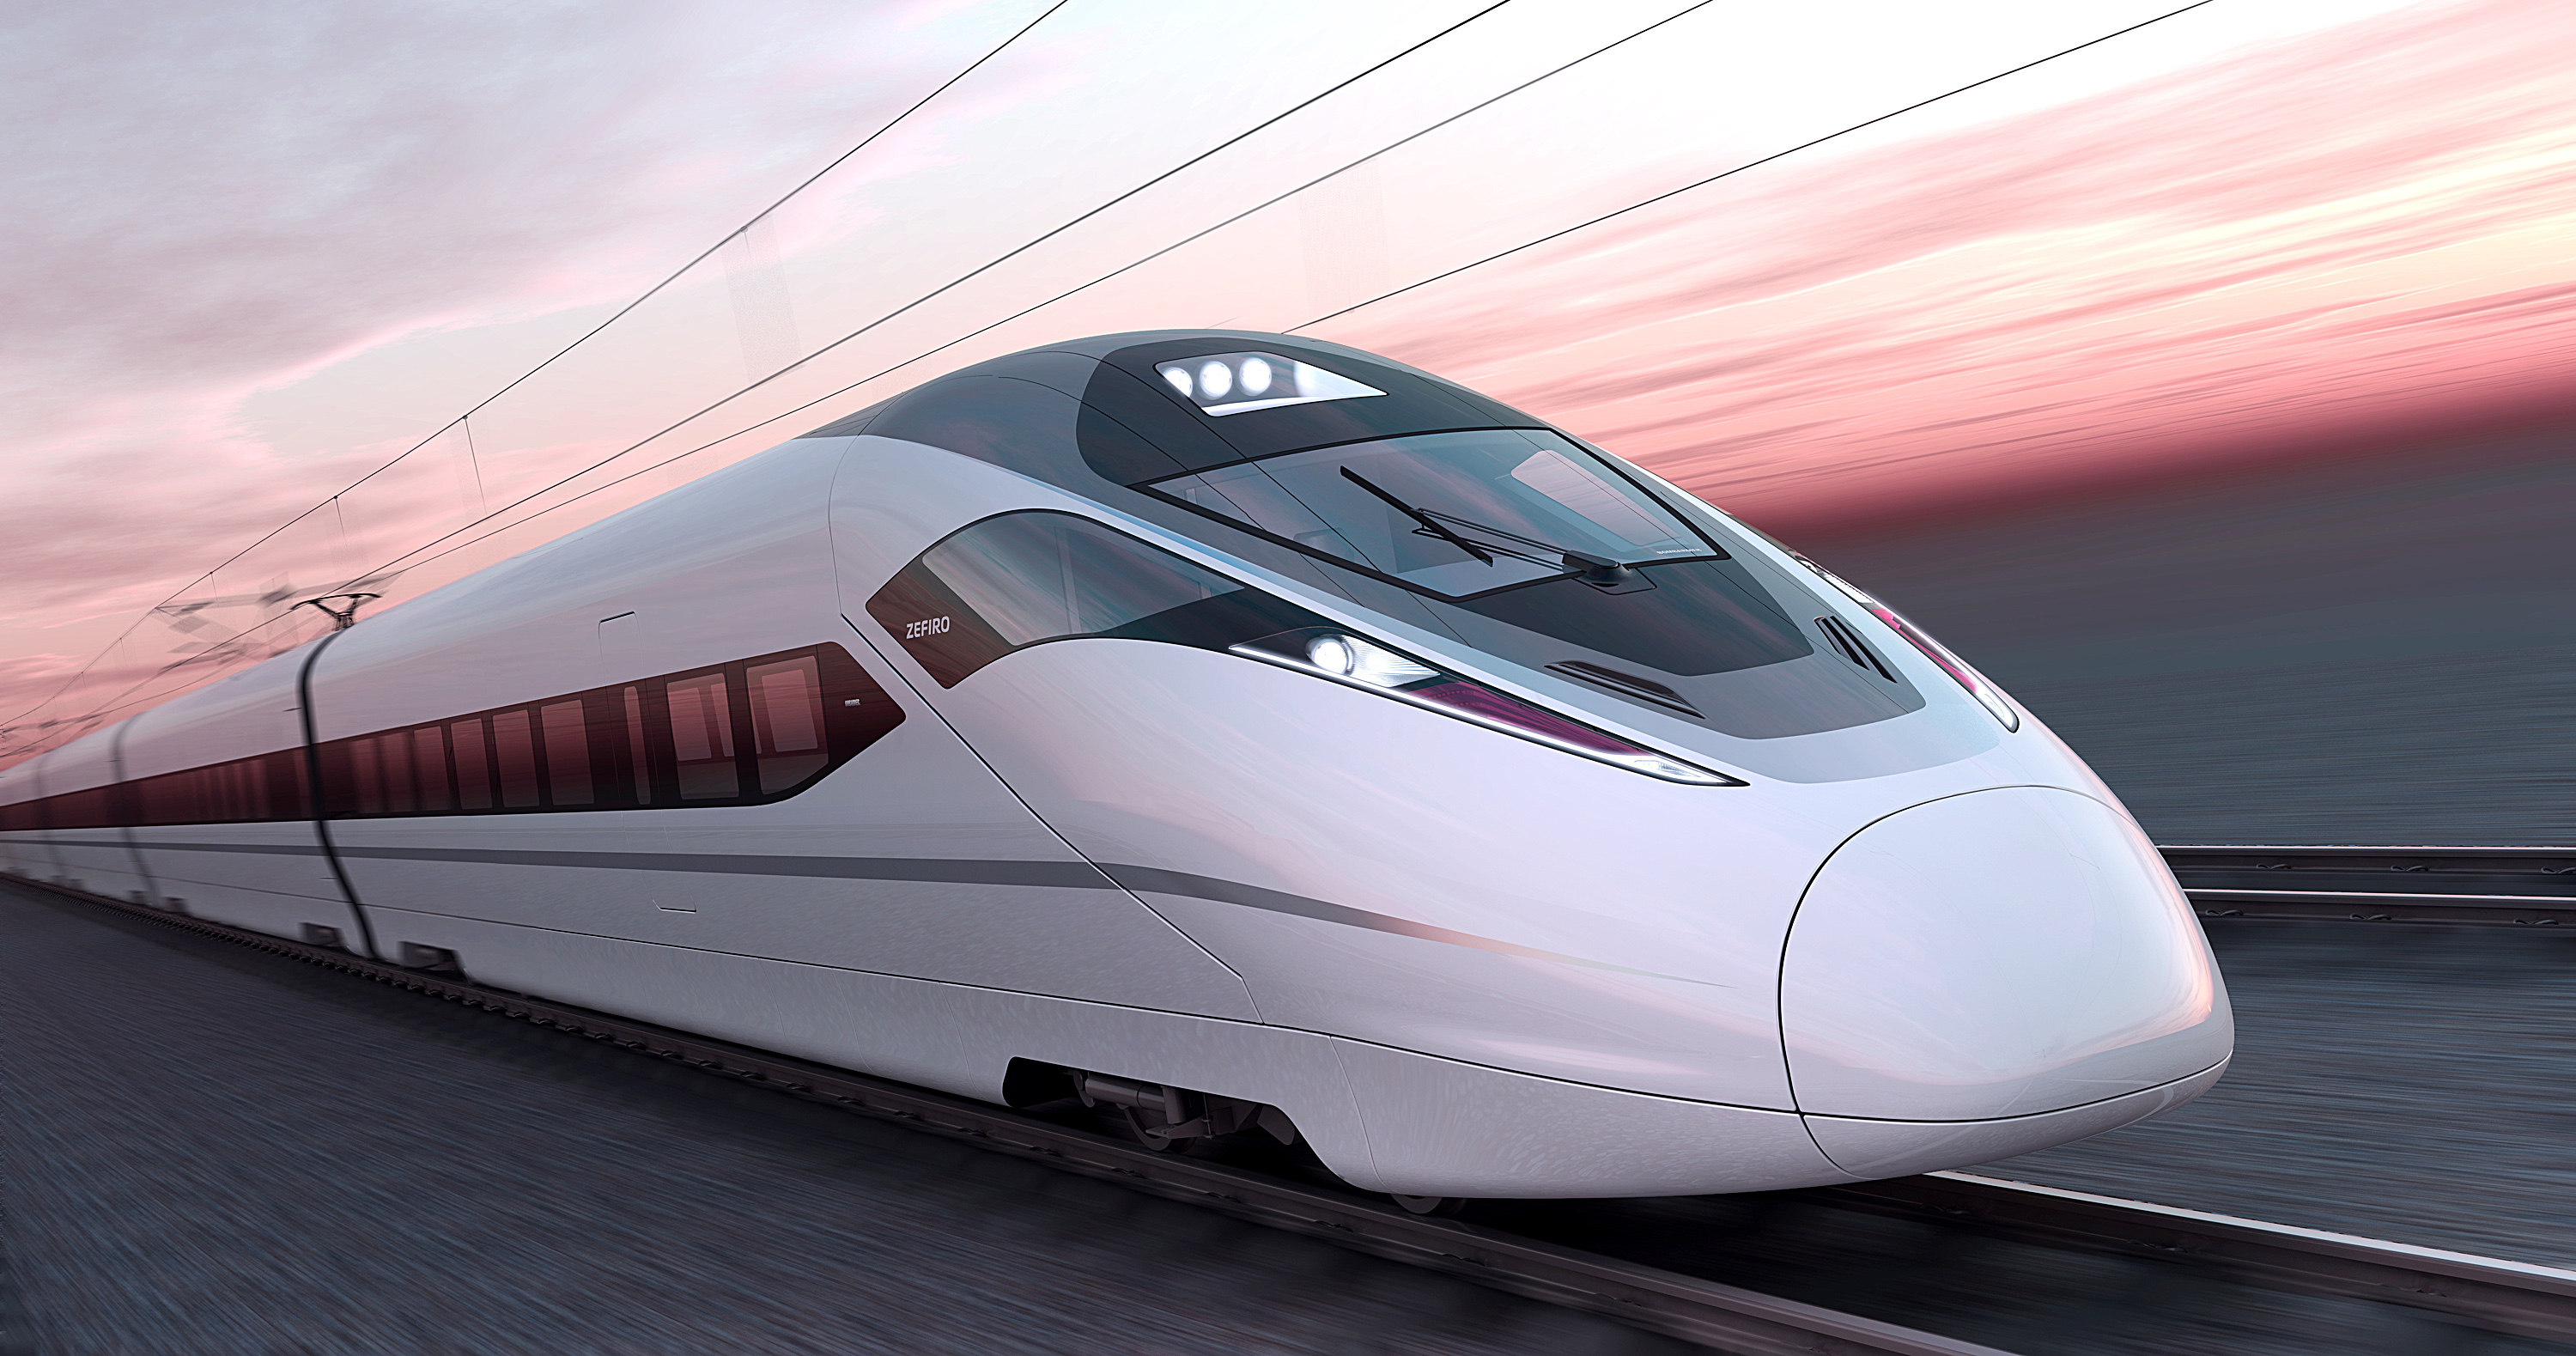 Fast Speed Train - HD Wallpaper 